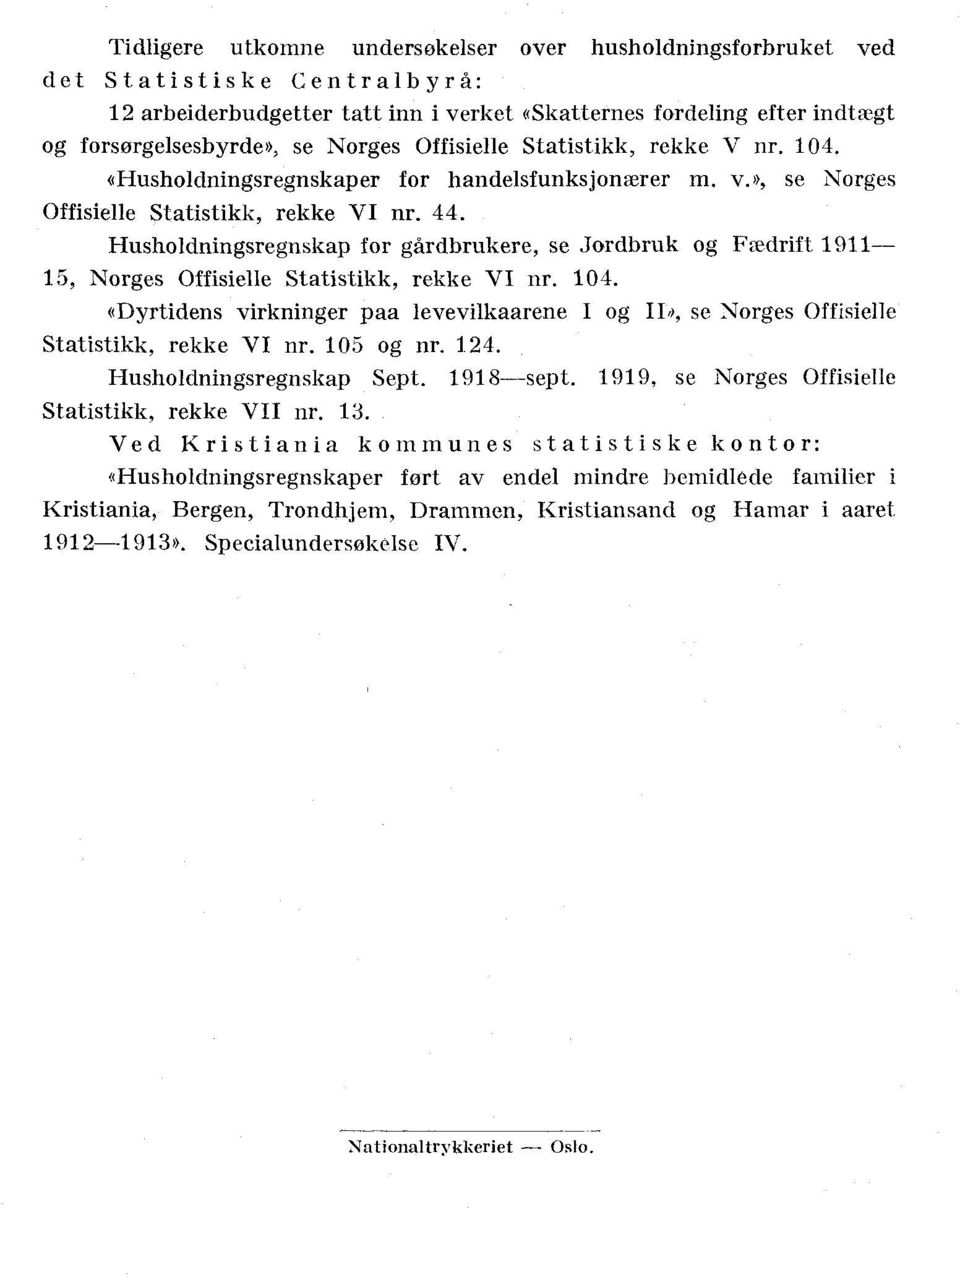 Husholdningsregnskap for gårdbrukere, se Jordbruk og Fædrift 1911 15, Norges Offisielle Statistikk, rekke VI nr. 104.